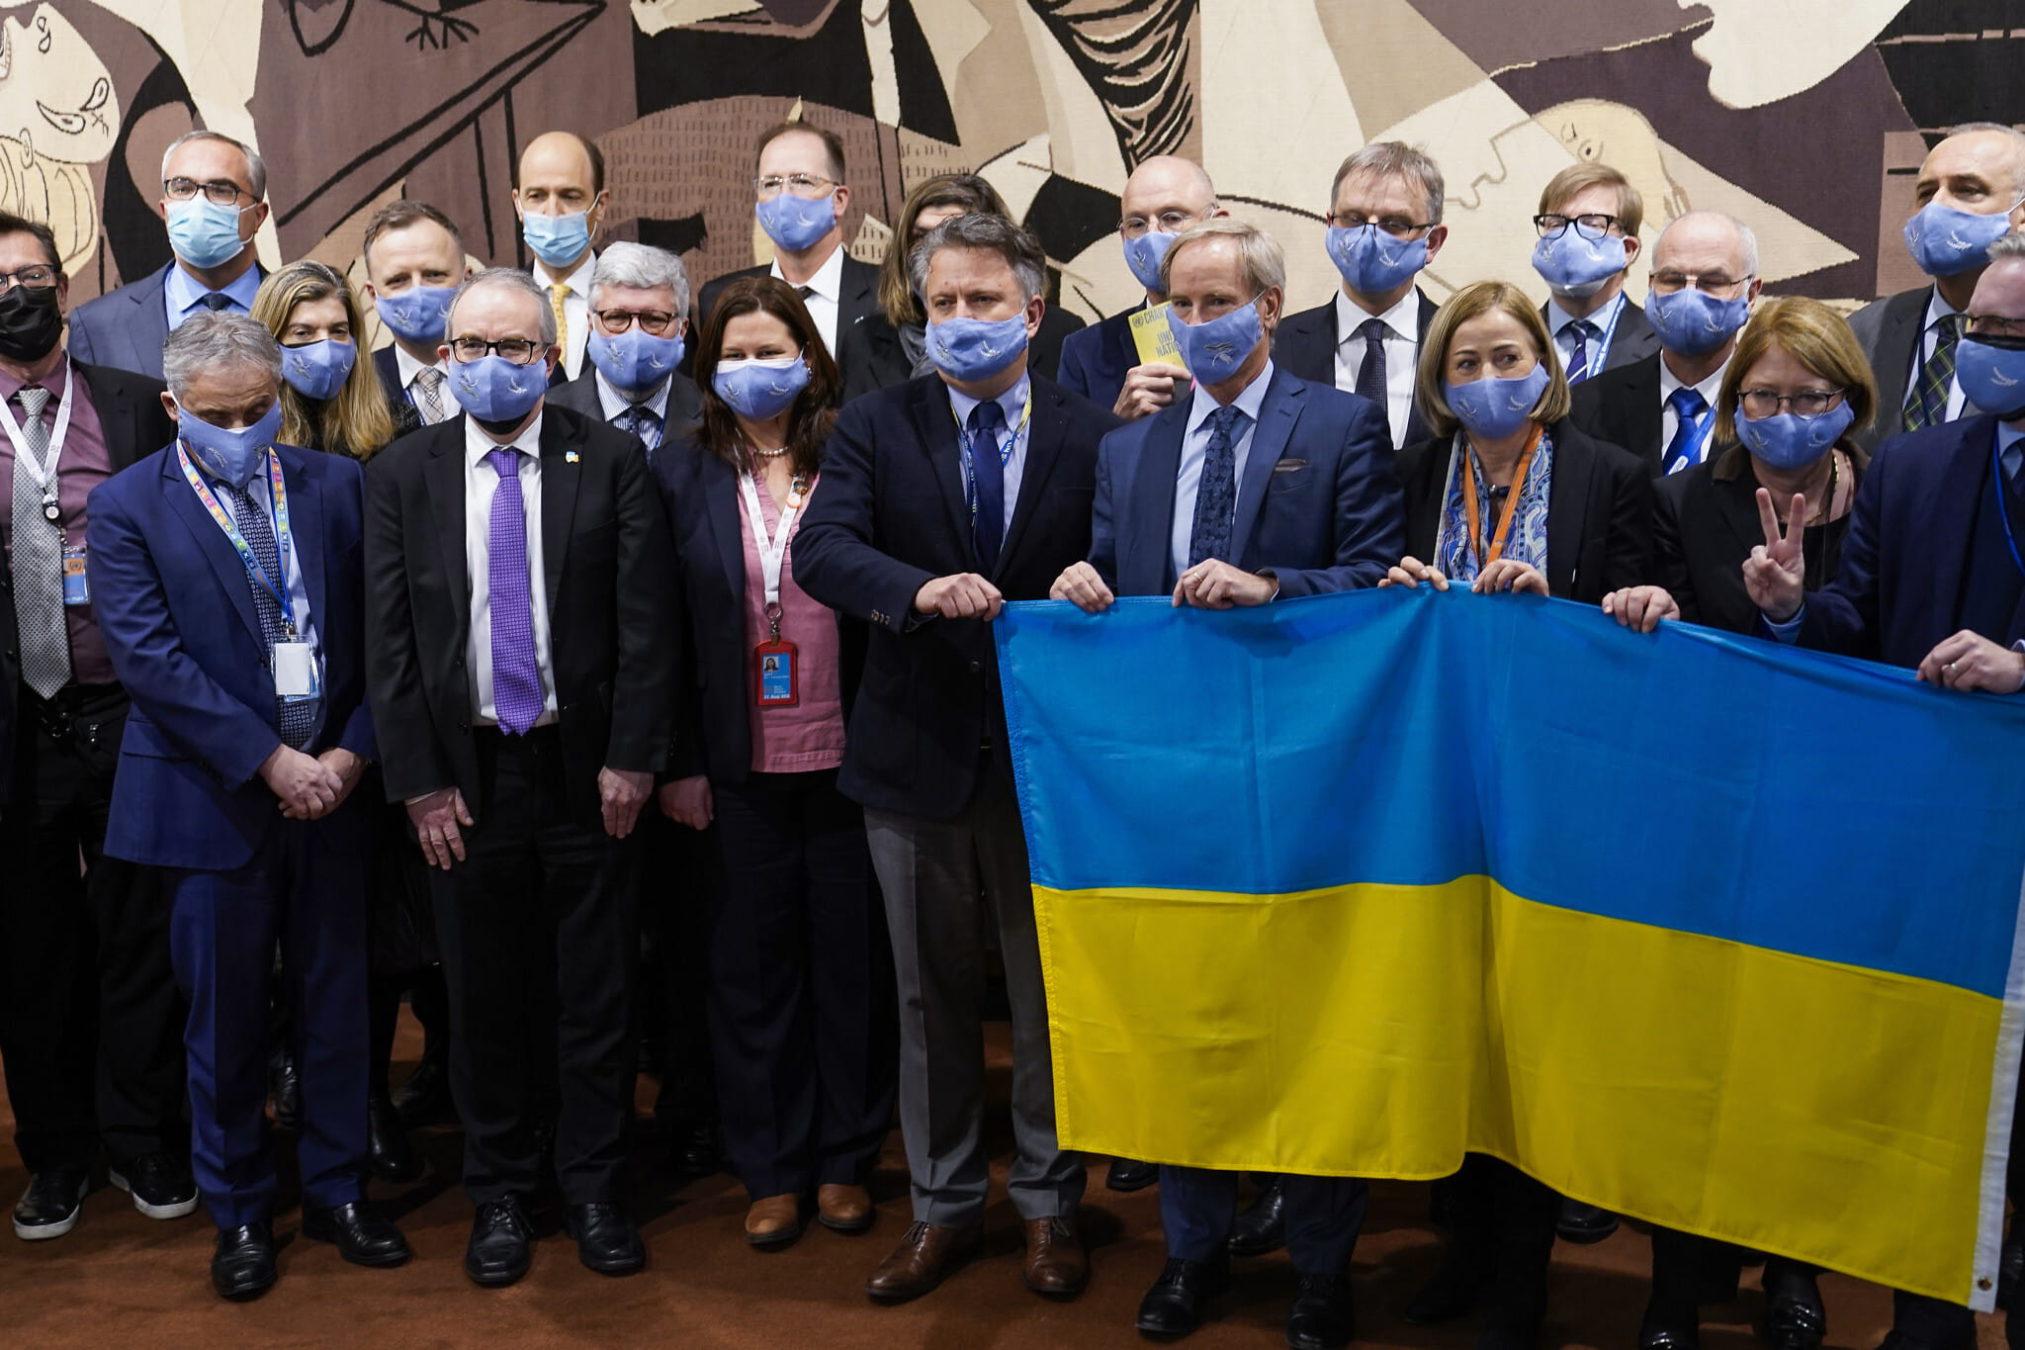 Sergiy Kyslytsya, embajador de Ucrania ante las Naciones Unidas, en el centro, sostiene una bandera mientras está flanqueado por representantes y ministros de la Unión Europea fuera de la sala del Consejo de Seguridad, el viernes 25 de febrero de 2022, en la sede de las Naciones Unidas. (AP Photo/John Minchillo)